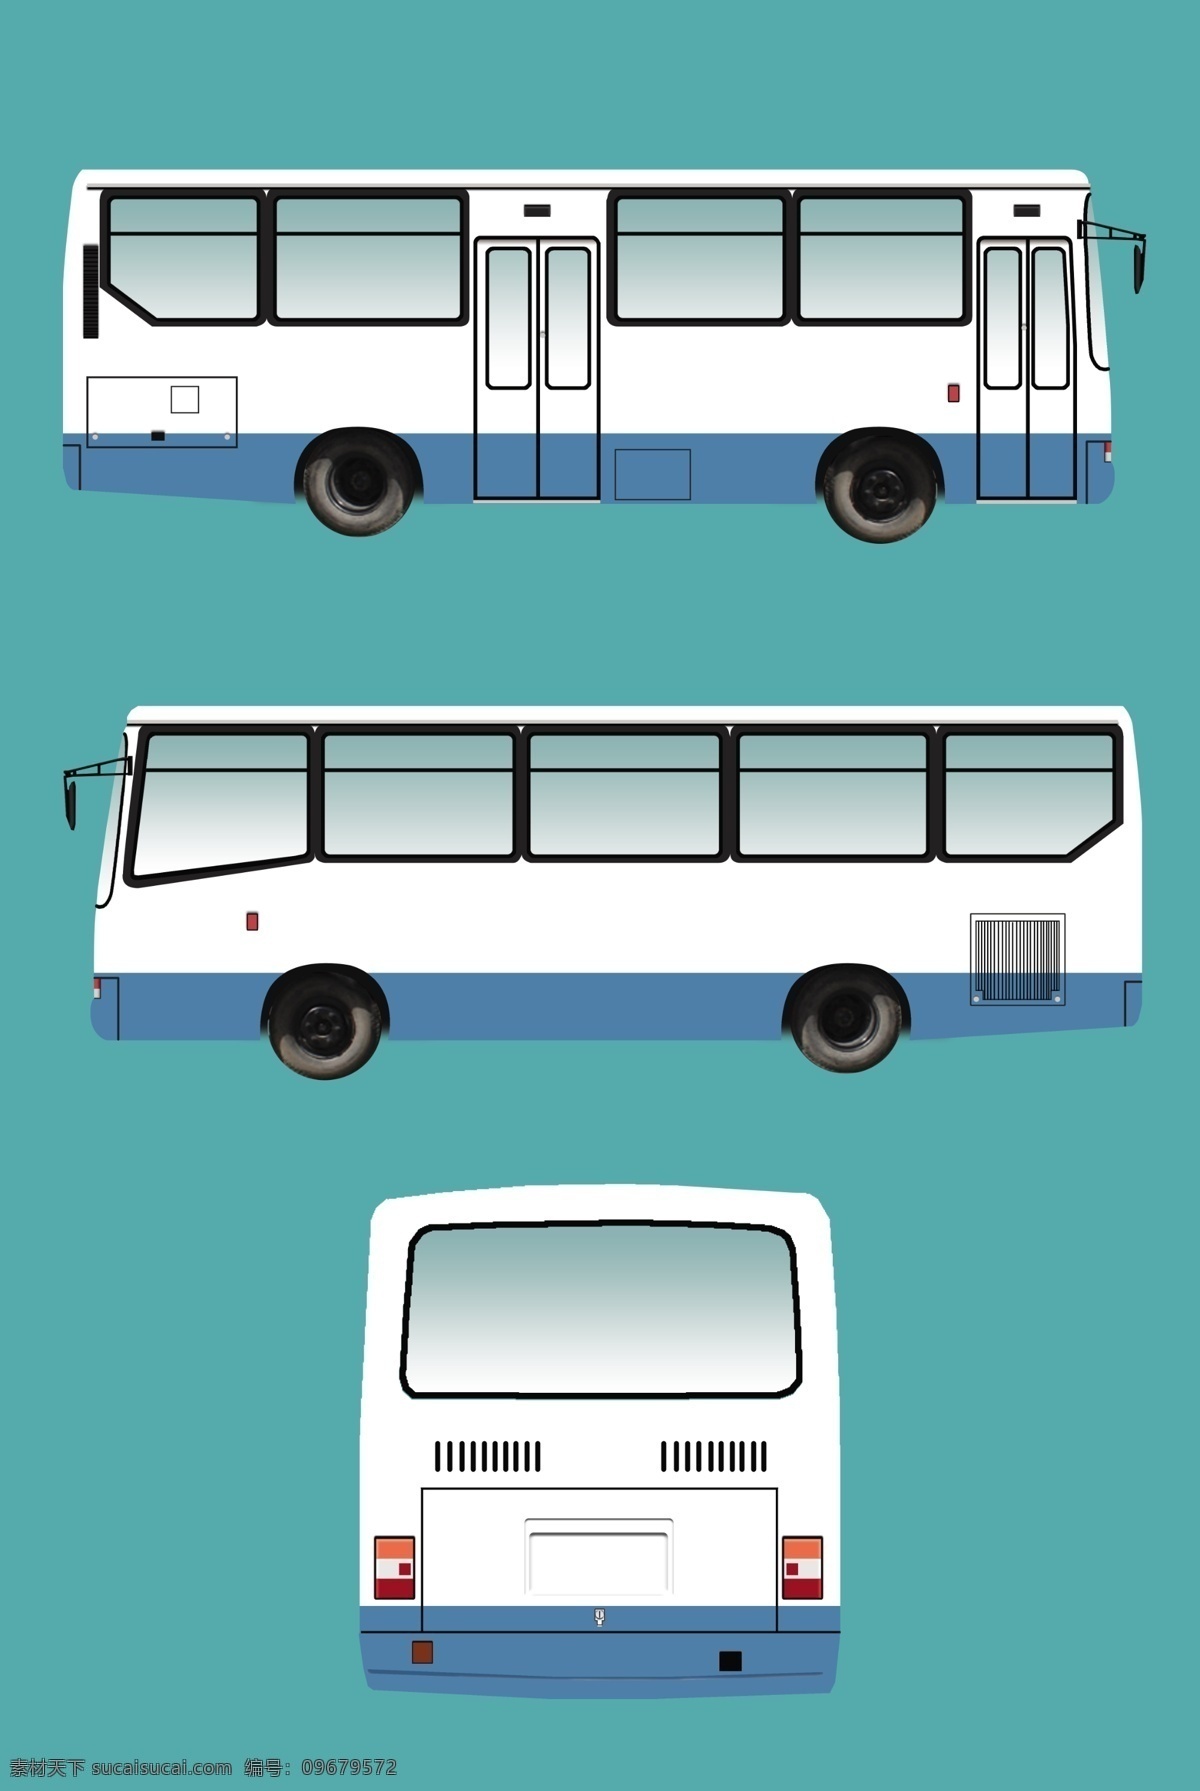 公交车车体 公交车 卡通 卡通公交车 卡通动漫 巴士双层巴士 双层公交车 车体 车体广告 汽车 汽车模型